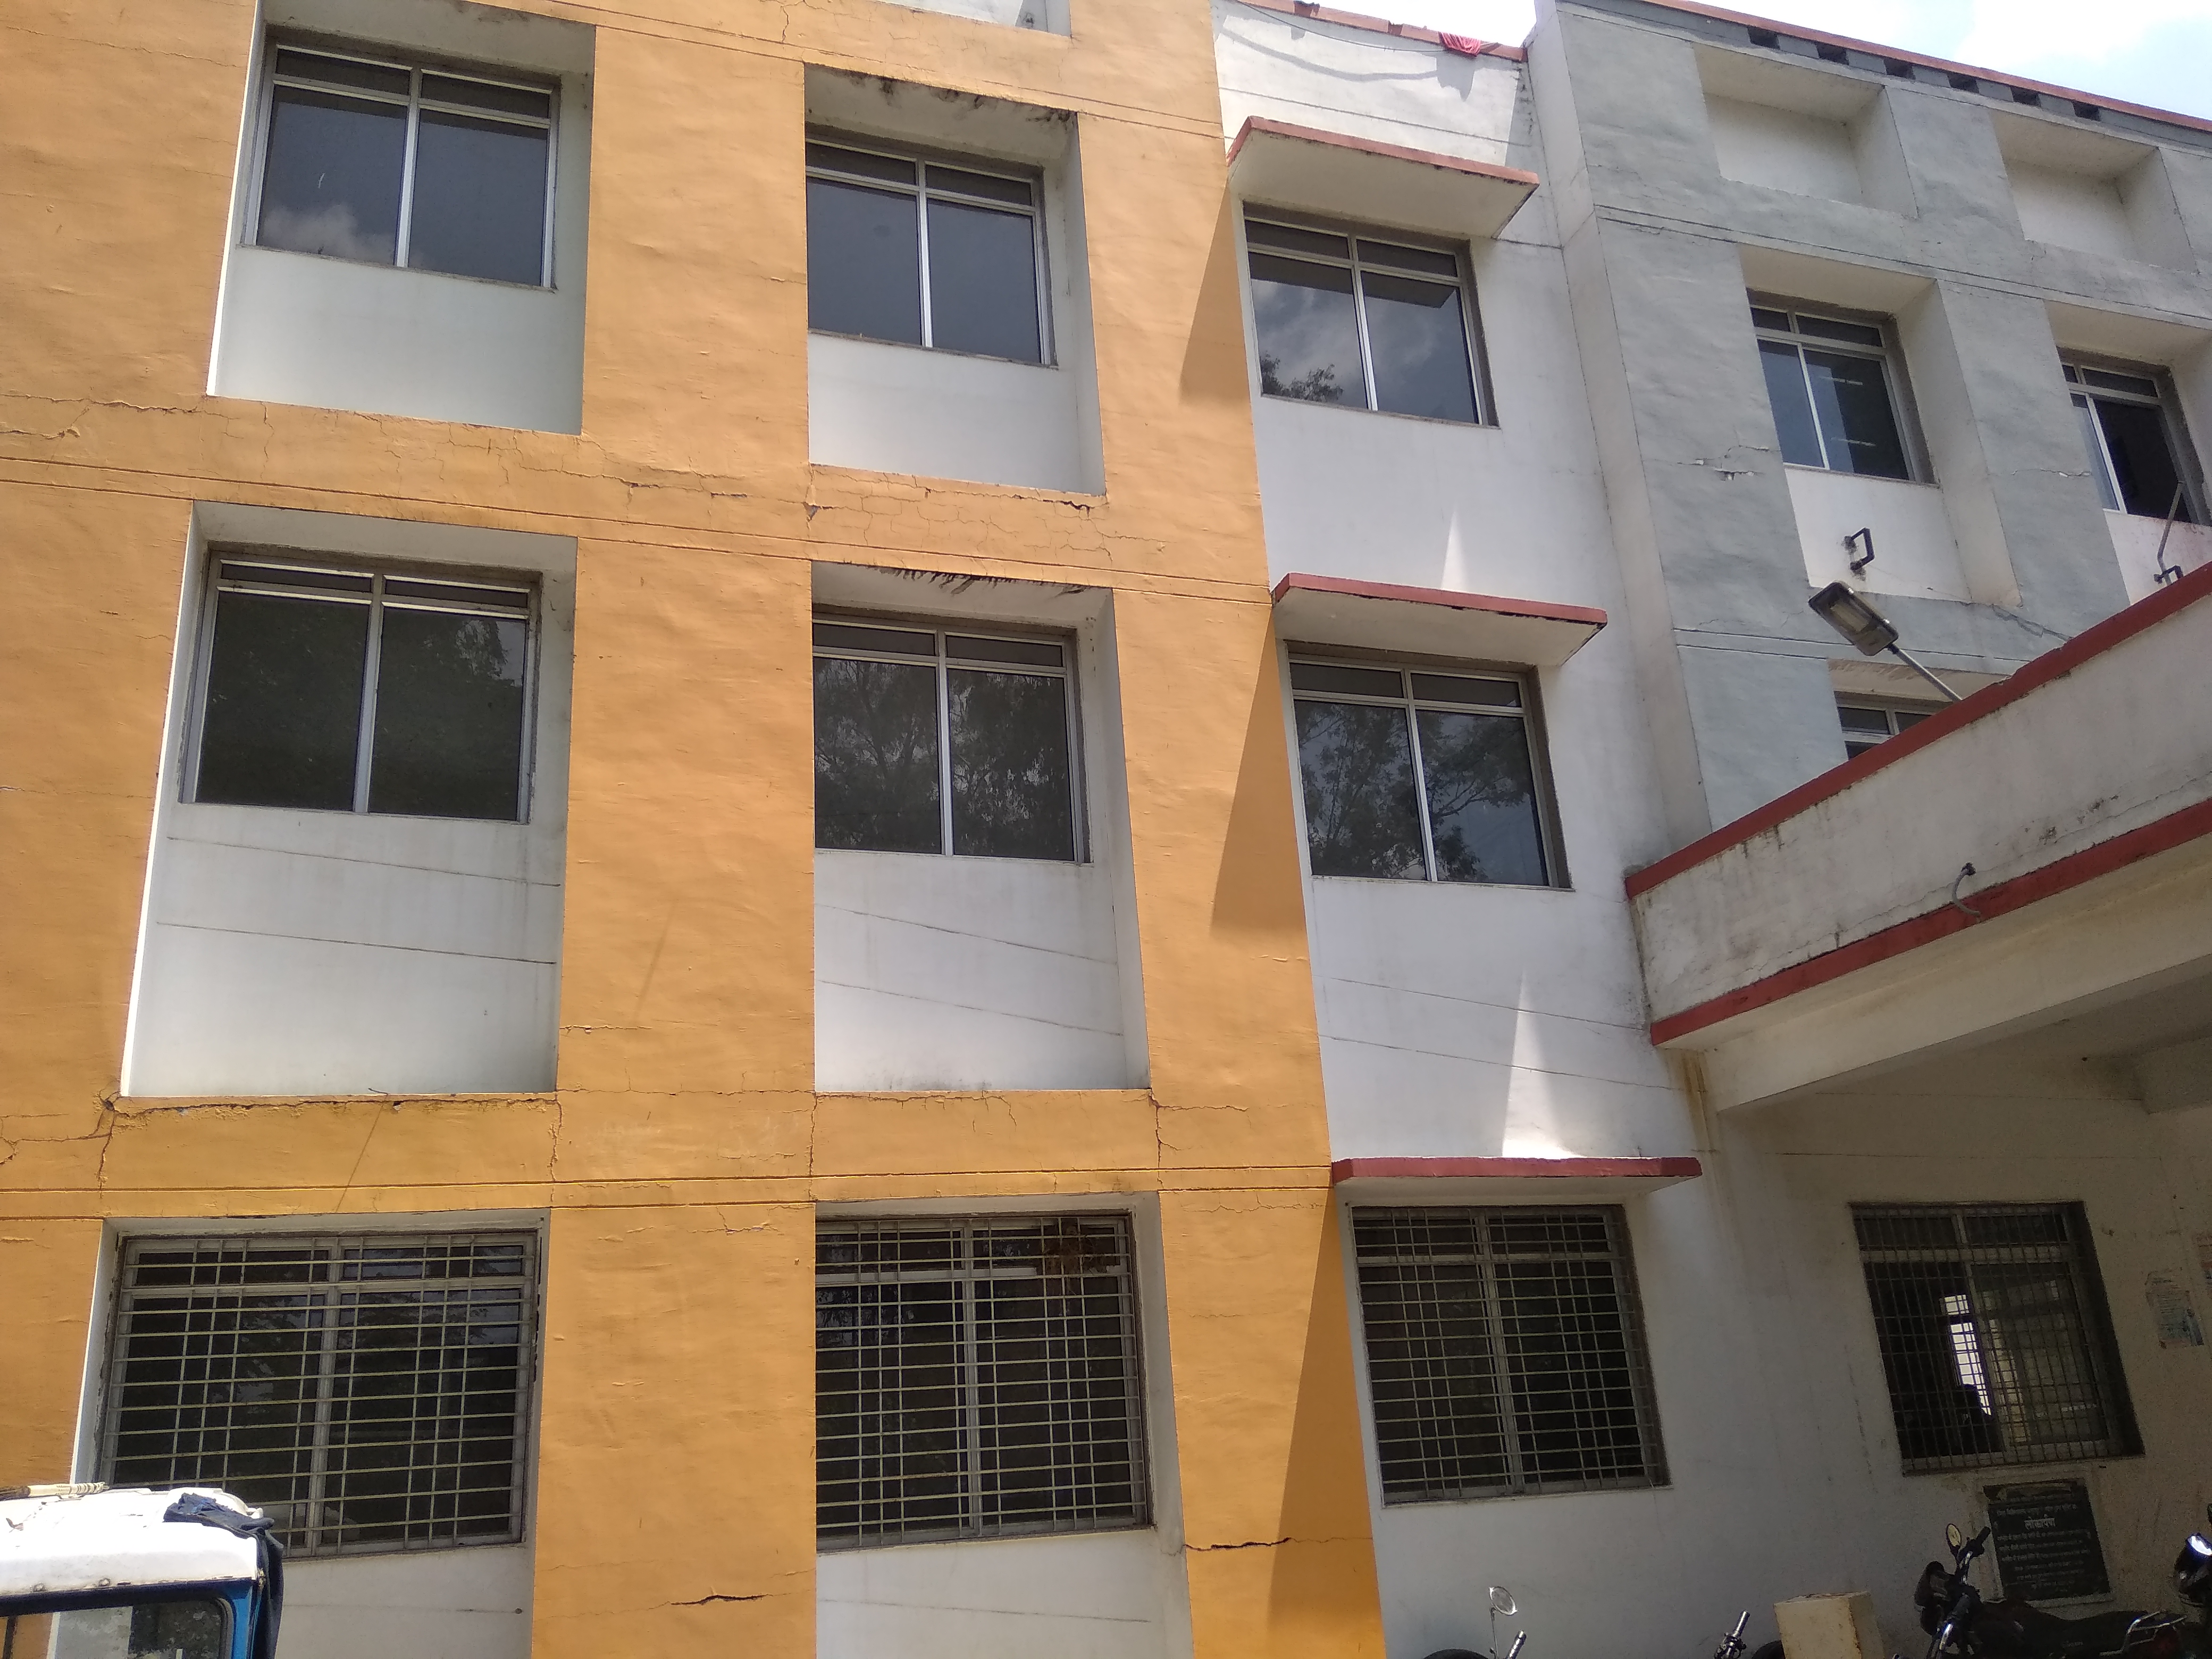 6.32 crore building of Trauma unit, cracks in walls